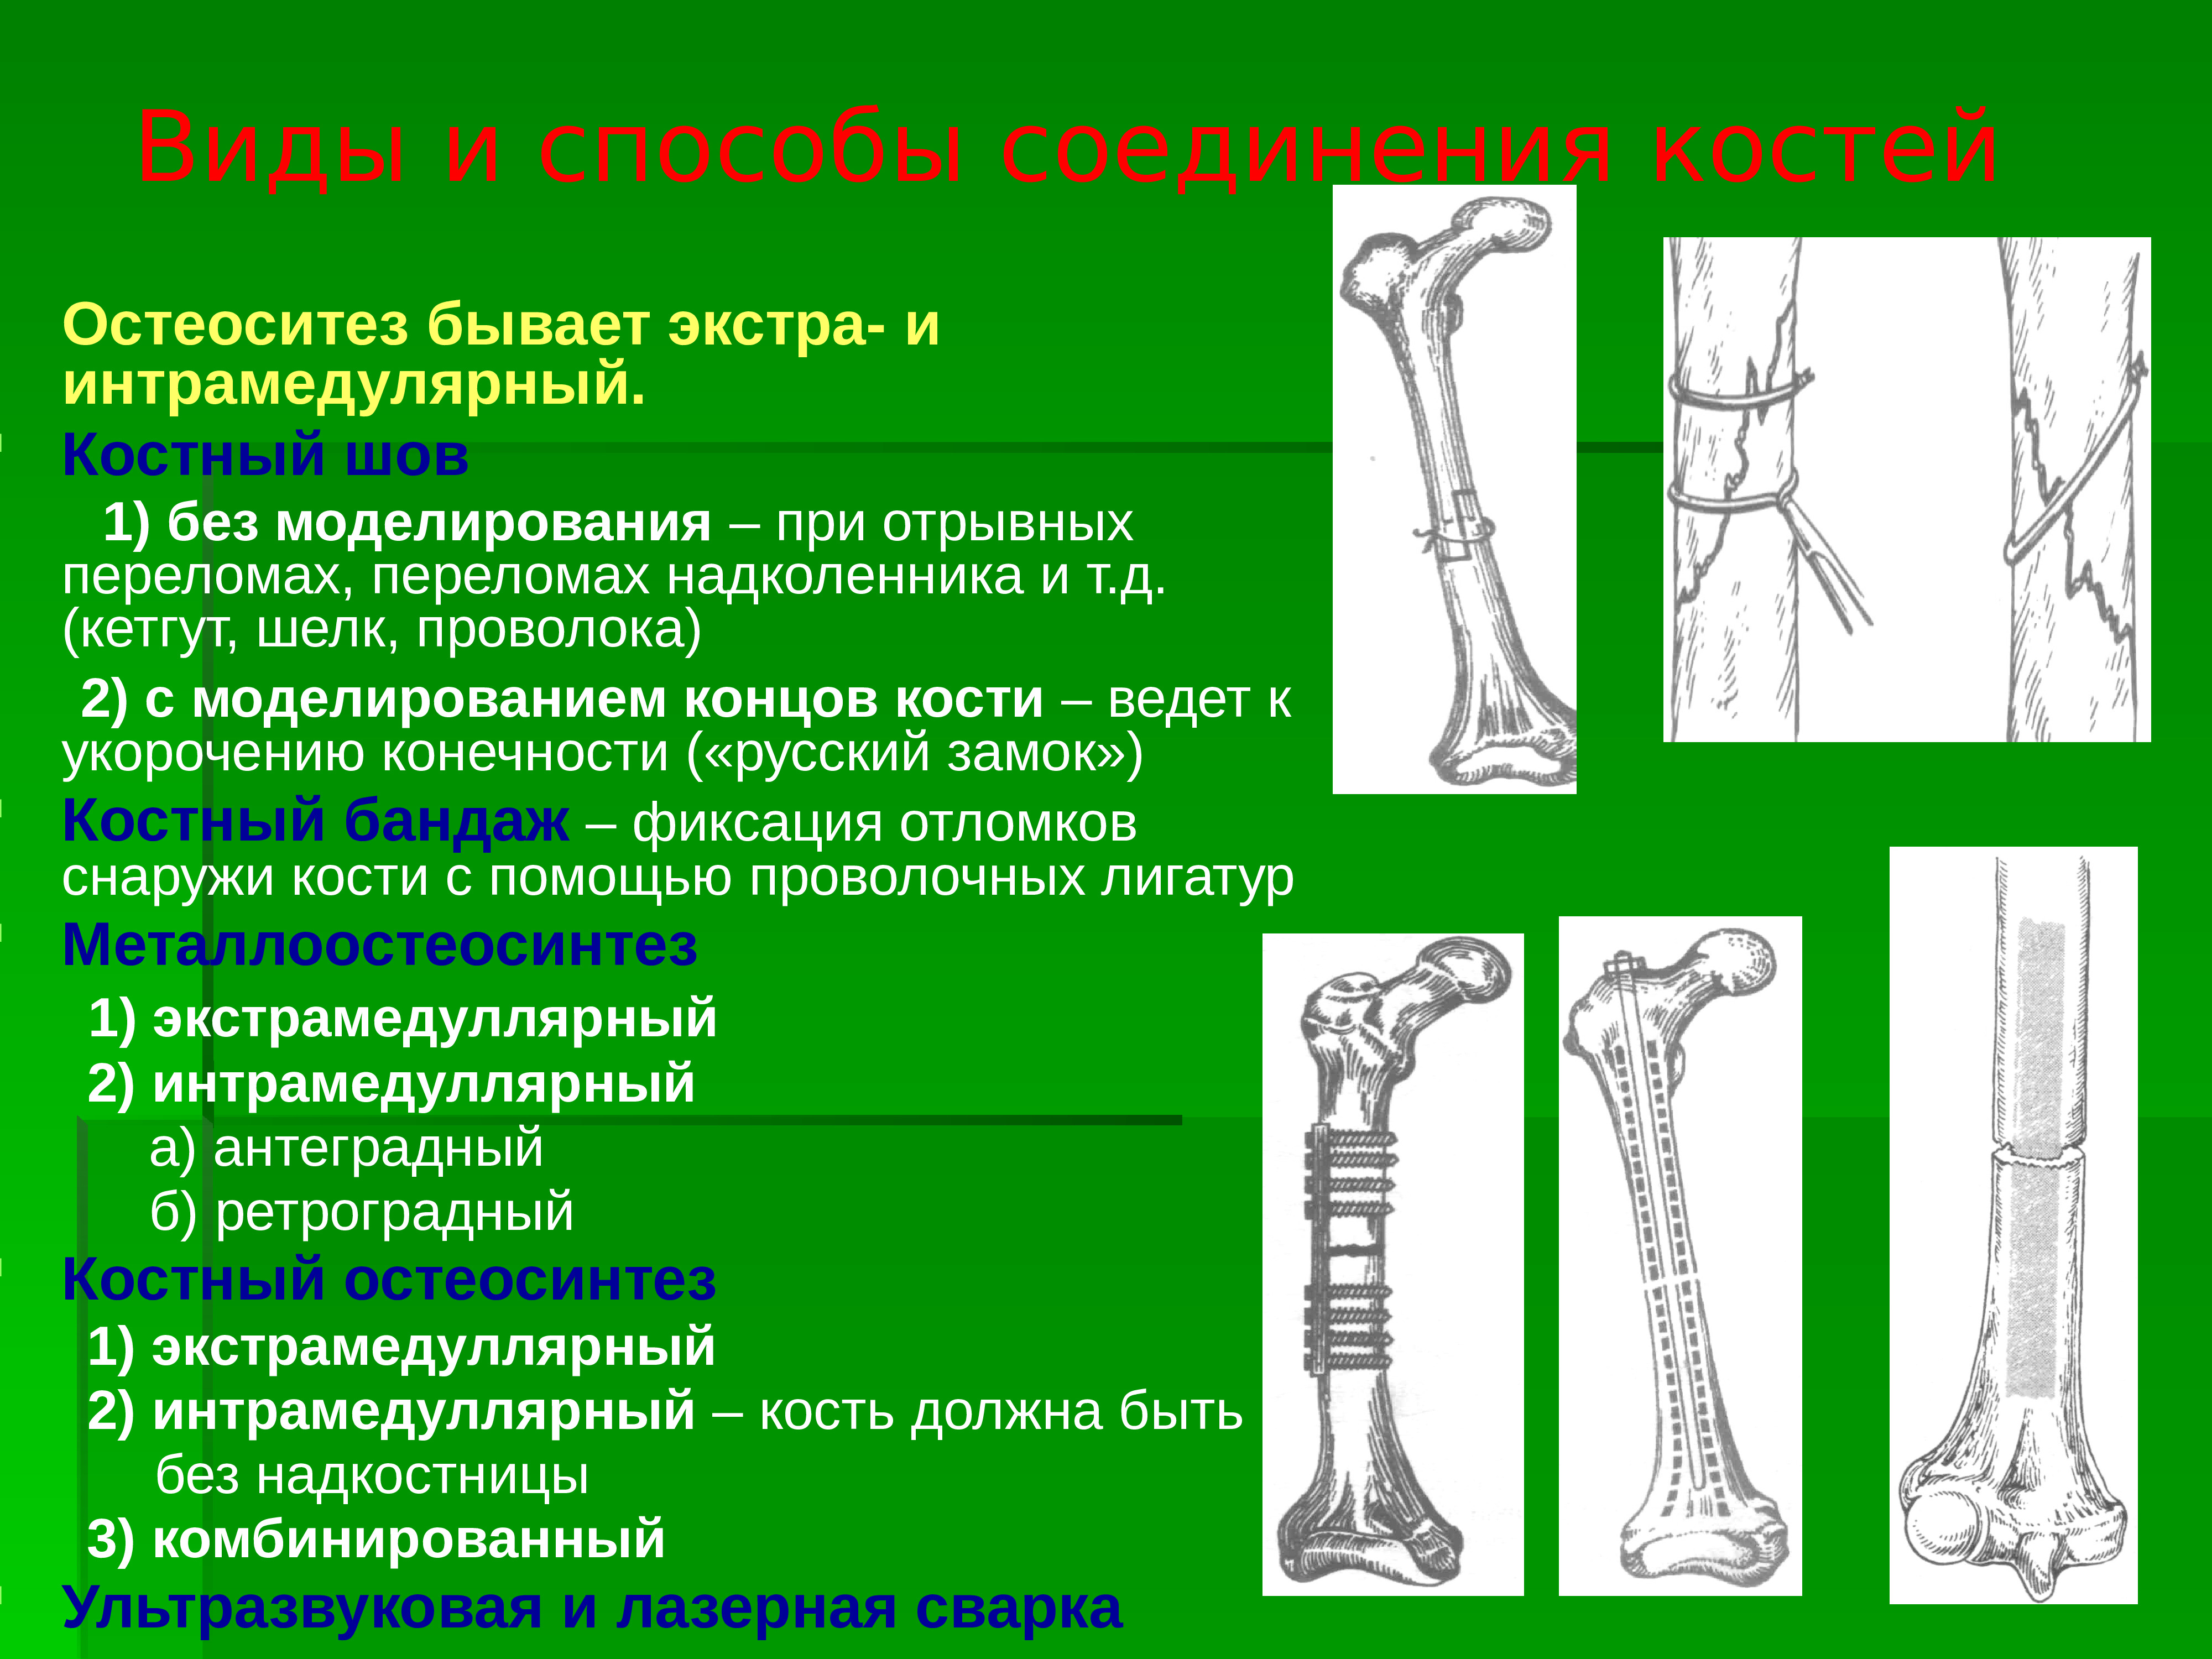 Операции верхних конечностей. Соединение костей Оперативная хирургия. Способы соединения костных отломков. Способы соединения костей хирургия. Антеградный интрамедуллярный остеосинтез.